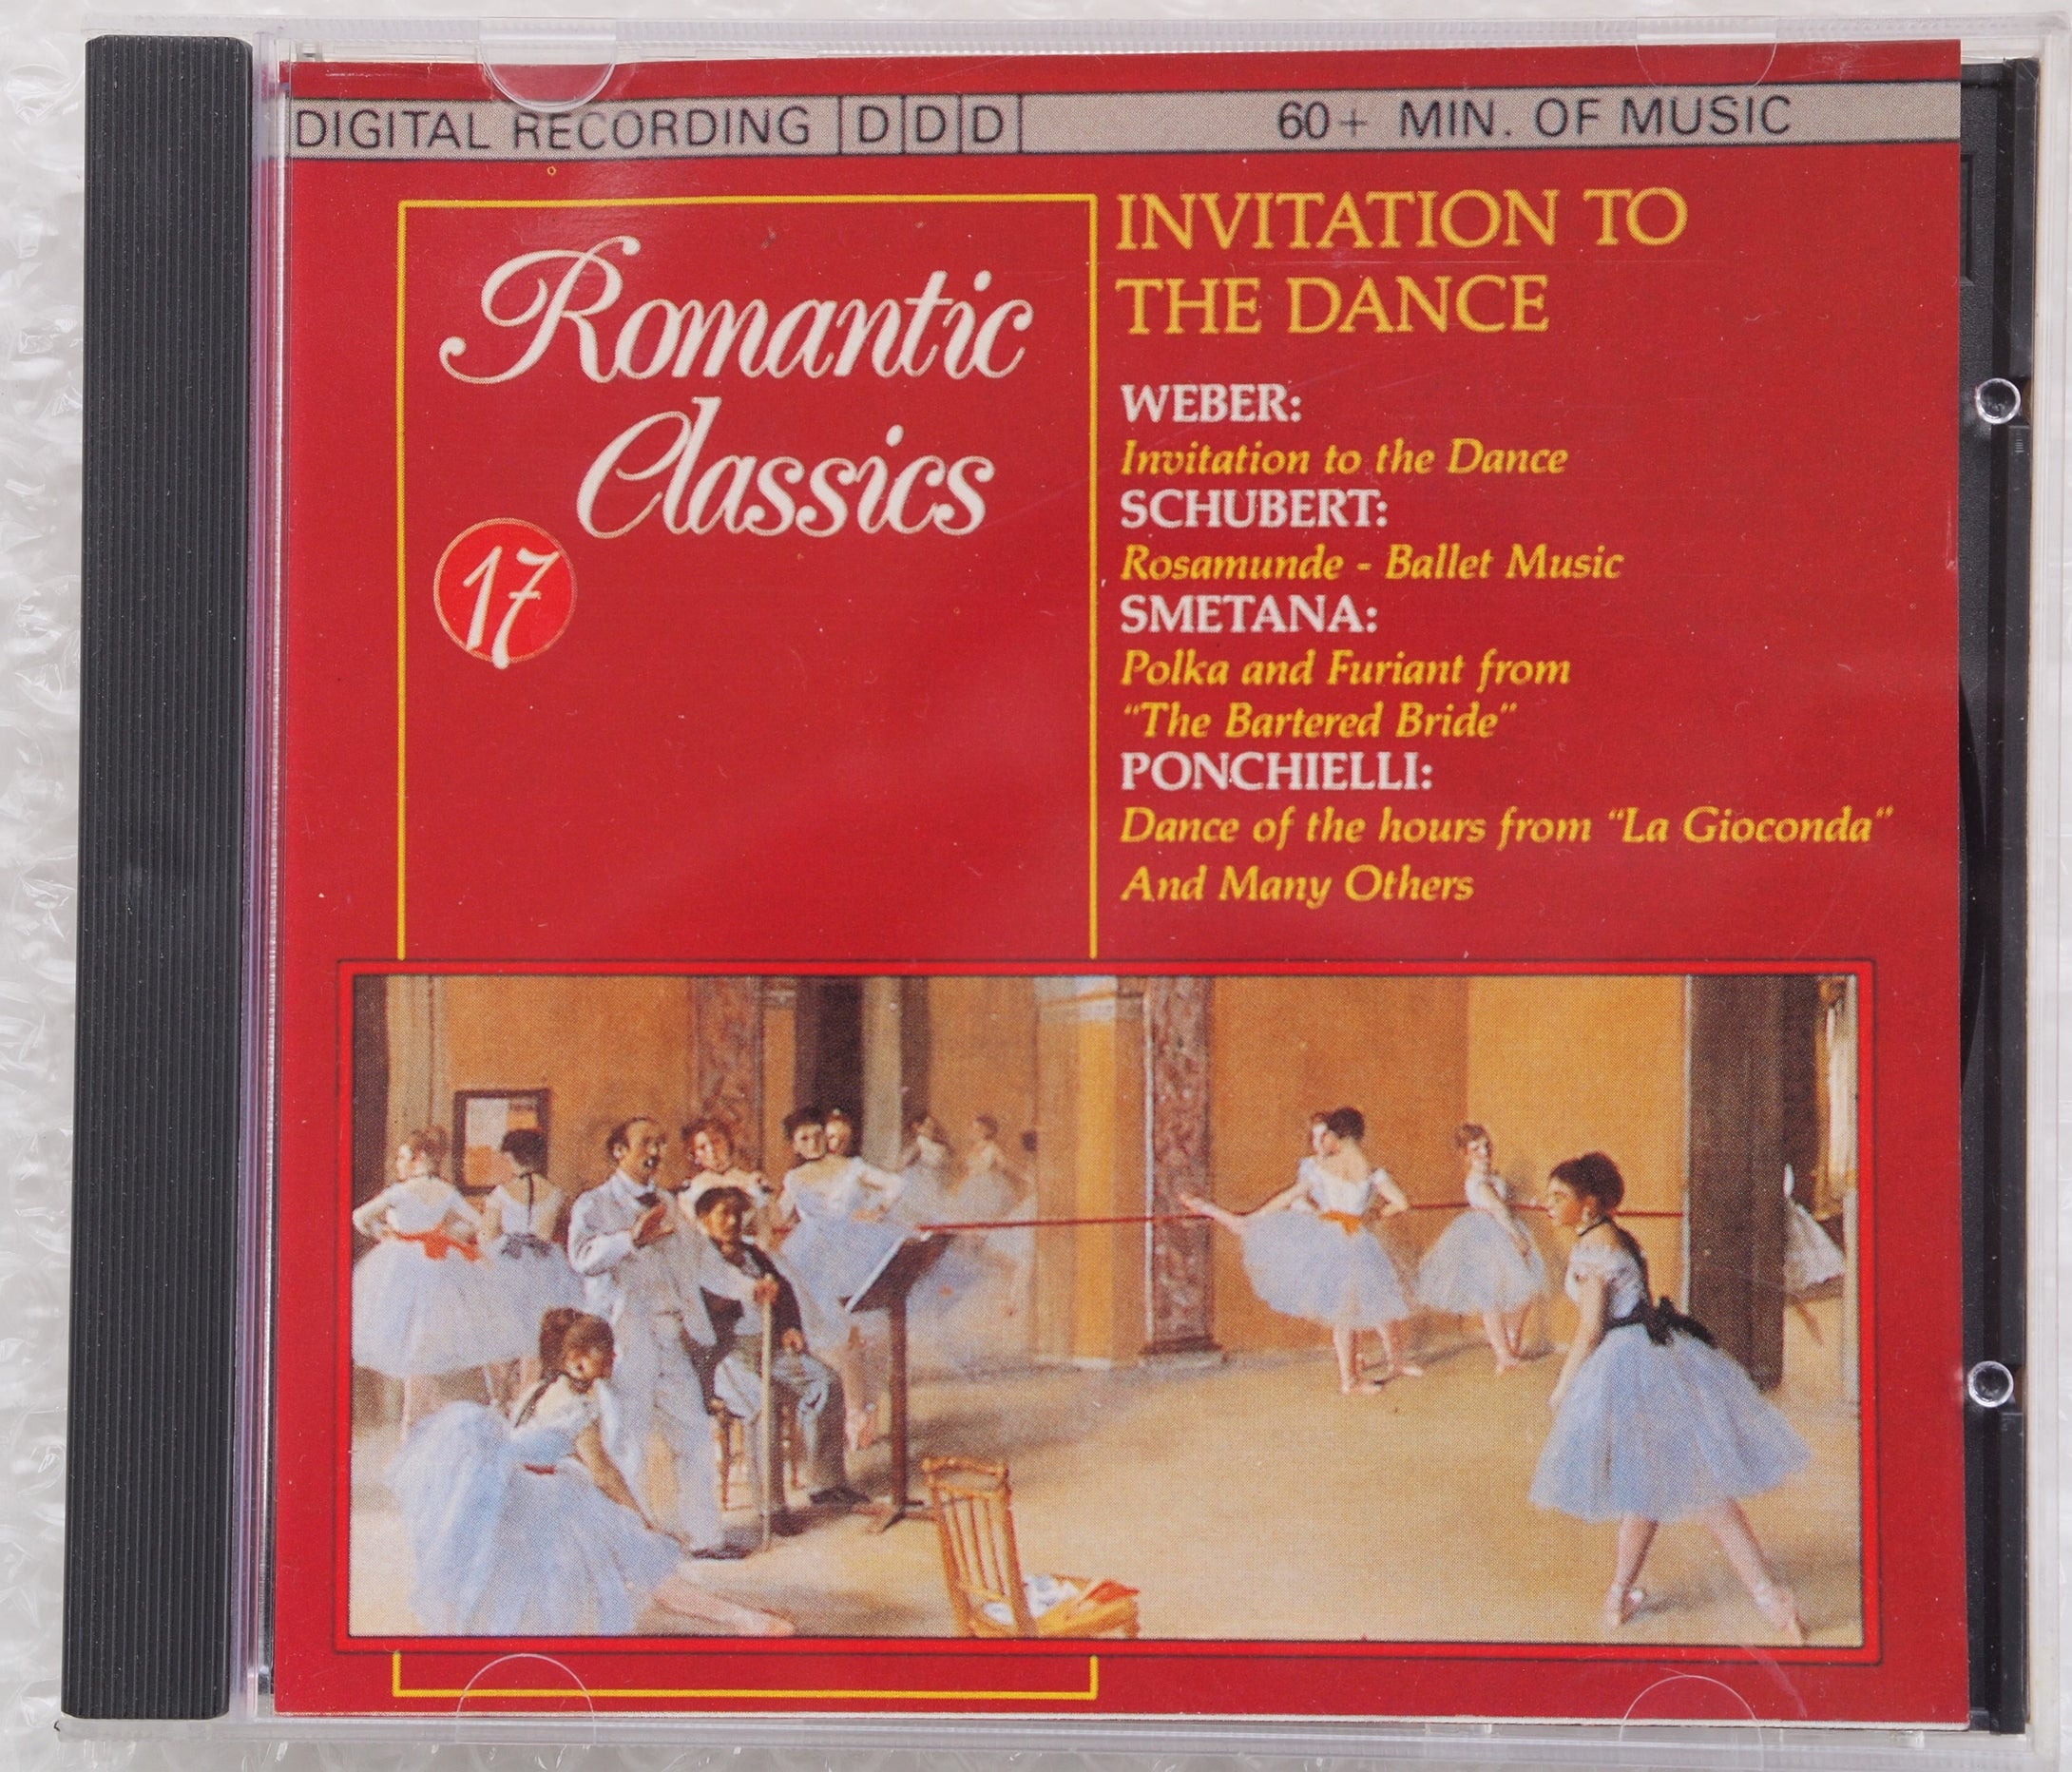 CD037: Romantic Classics - Invitation to the Dance